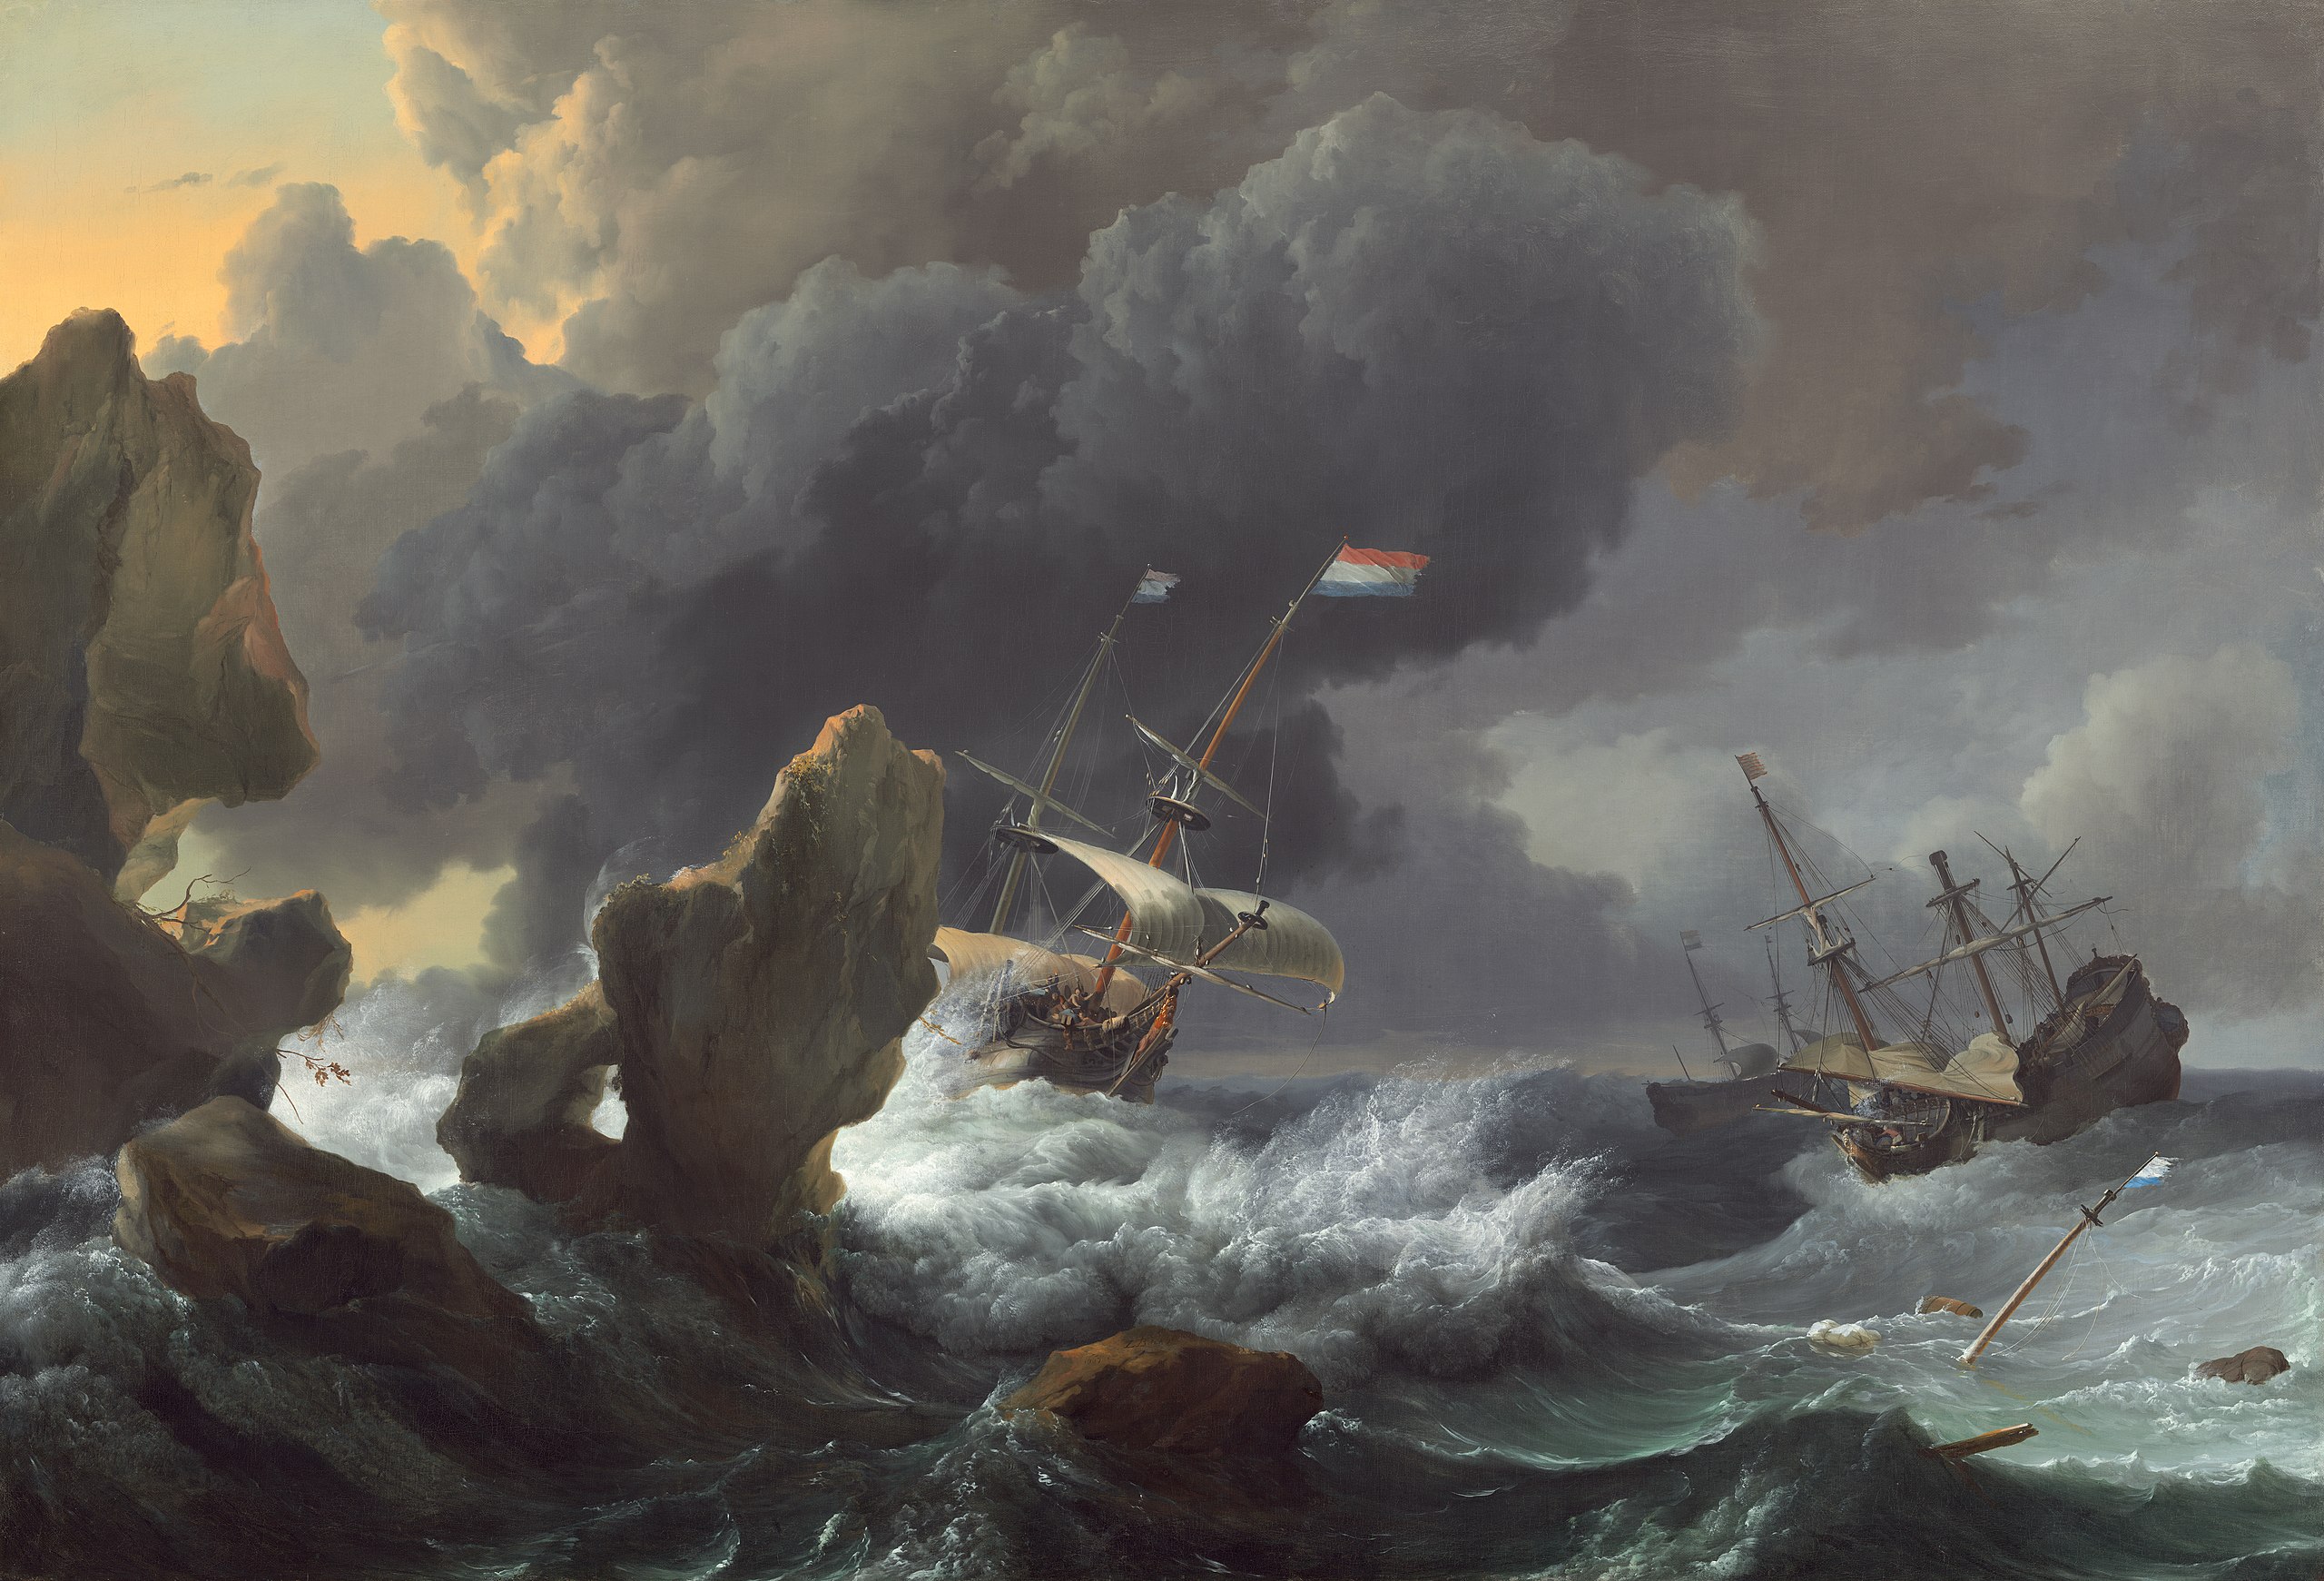 岩礁の難破船 by Ludolf Backhuysen - 1667年 - 114.3 x 167.3 cm 